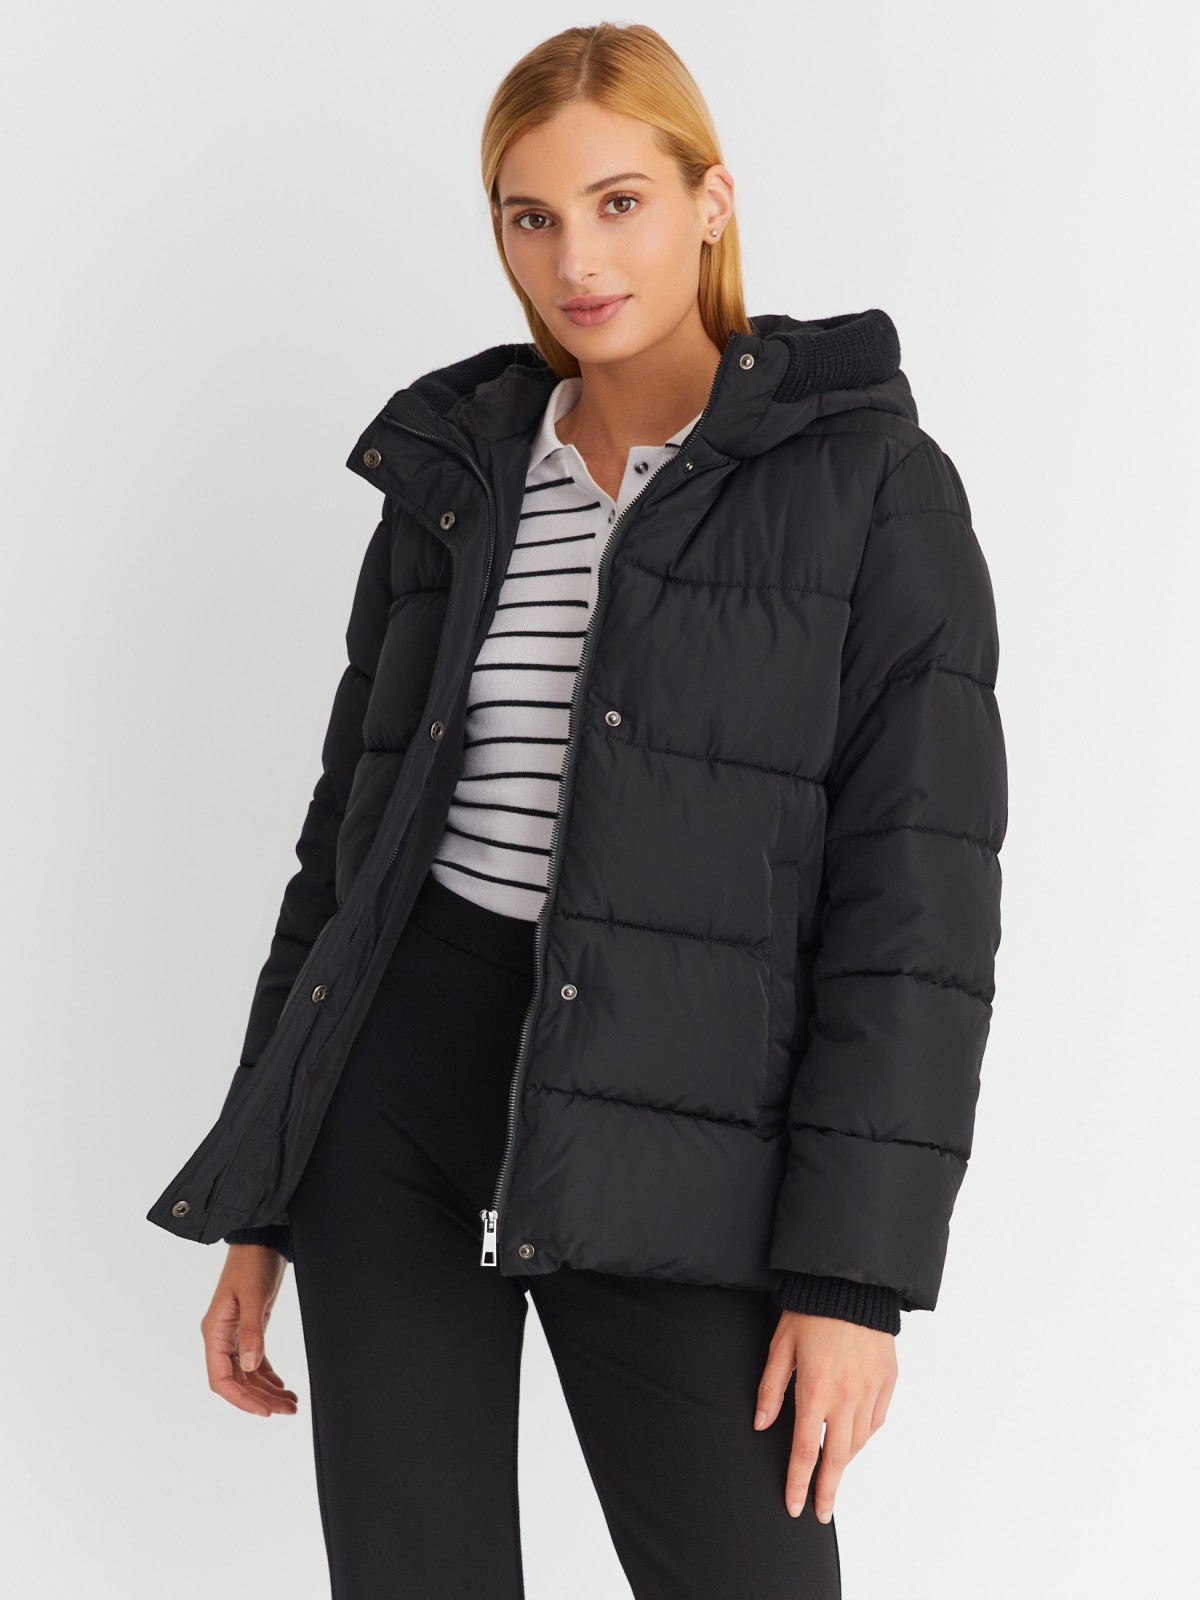 Тёплая стёганая куртка с капюшоном и внутренними манжетами-риб zolla 023345102064, цвет черный, размер S - фото 1